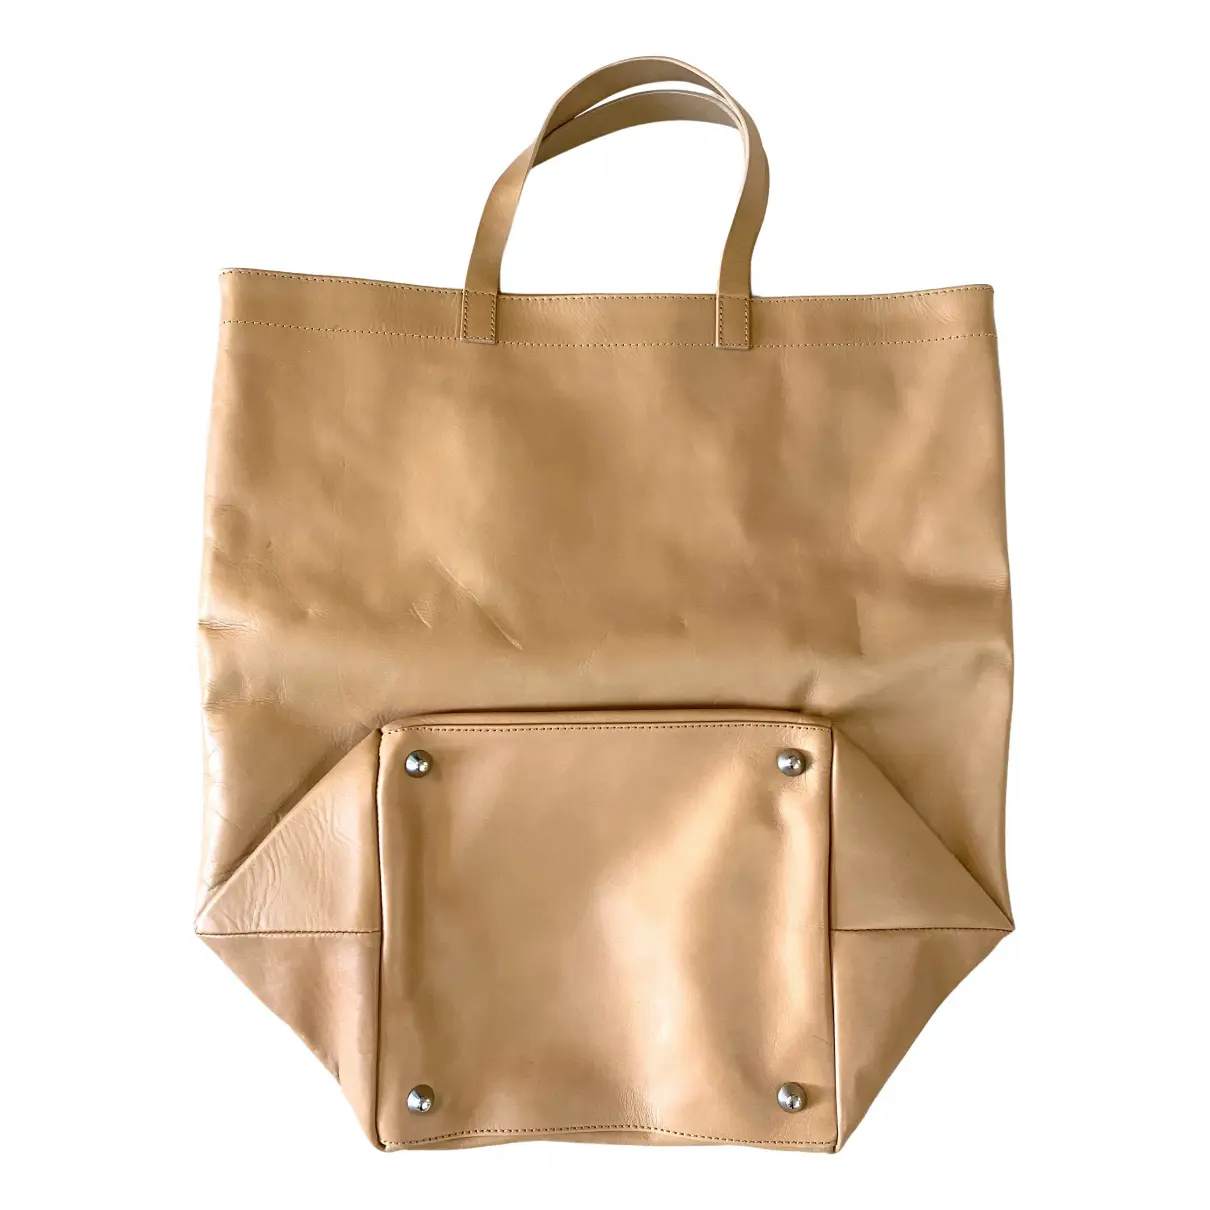 Buy Maison Martin Margiela Pour H&M Leather bag online